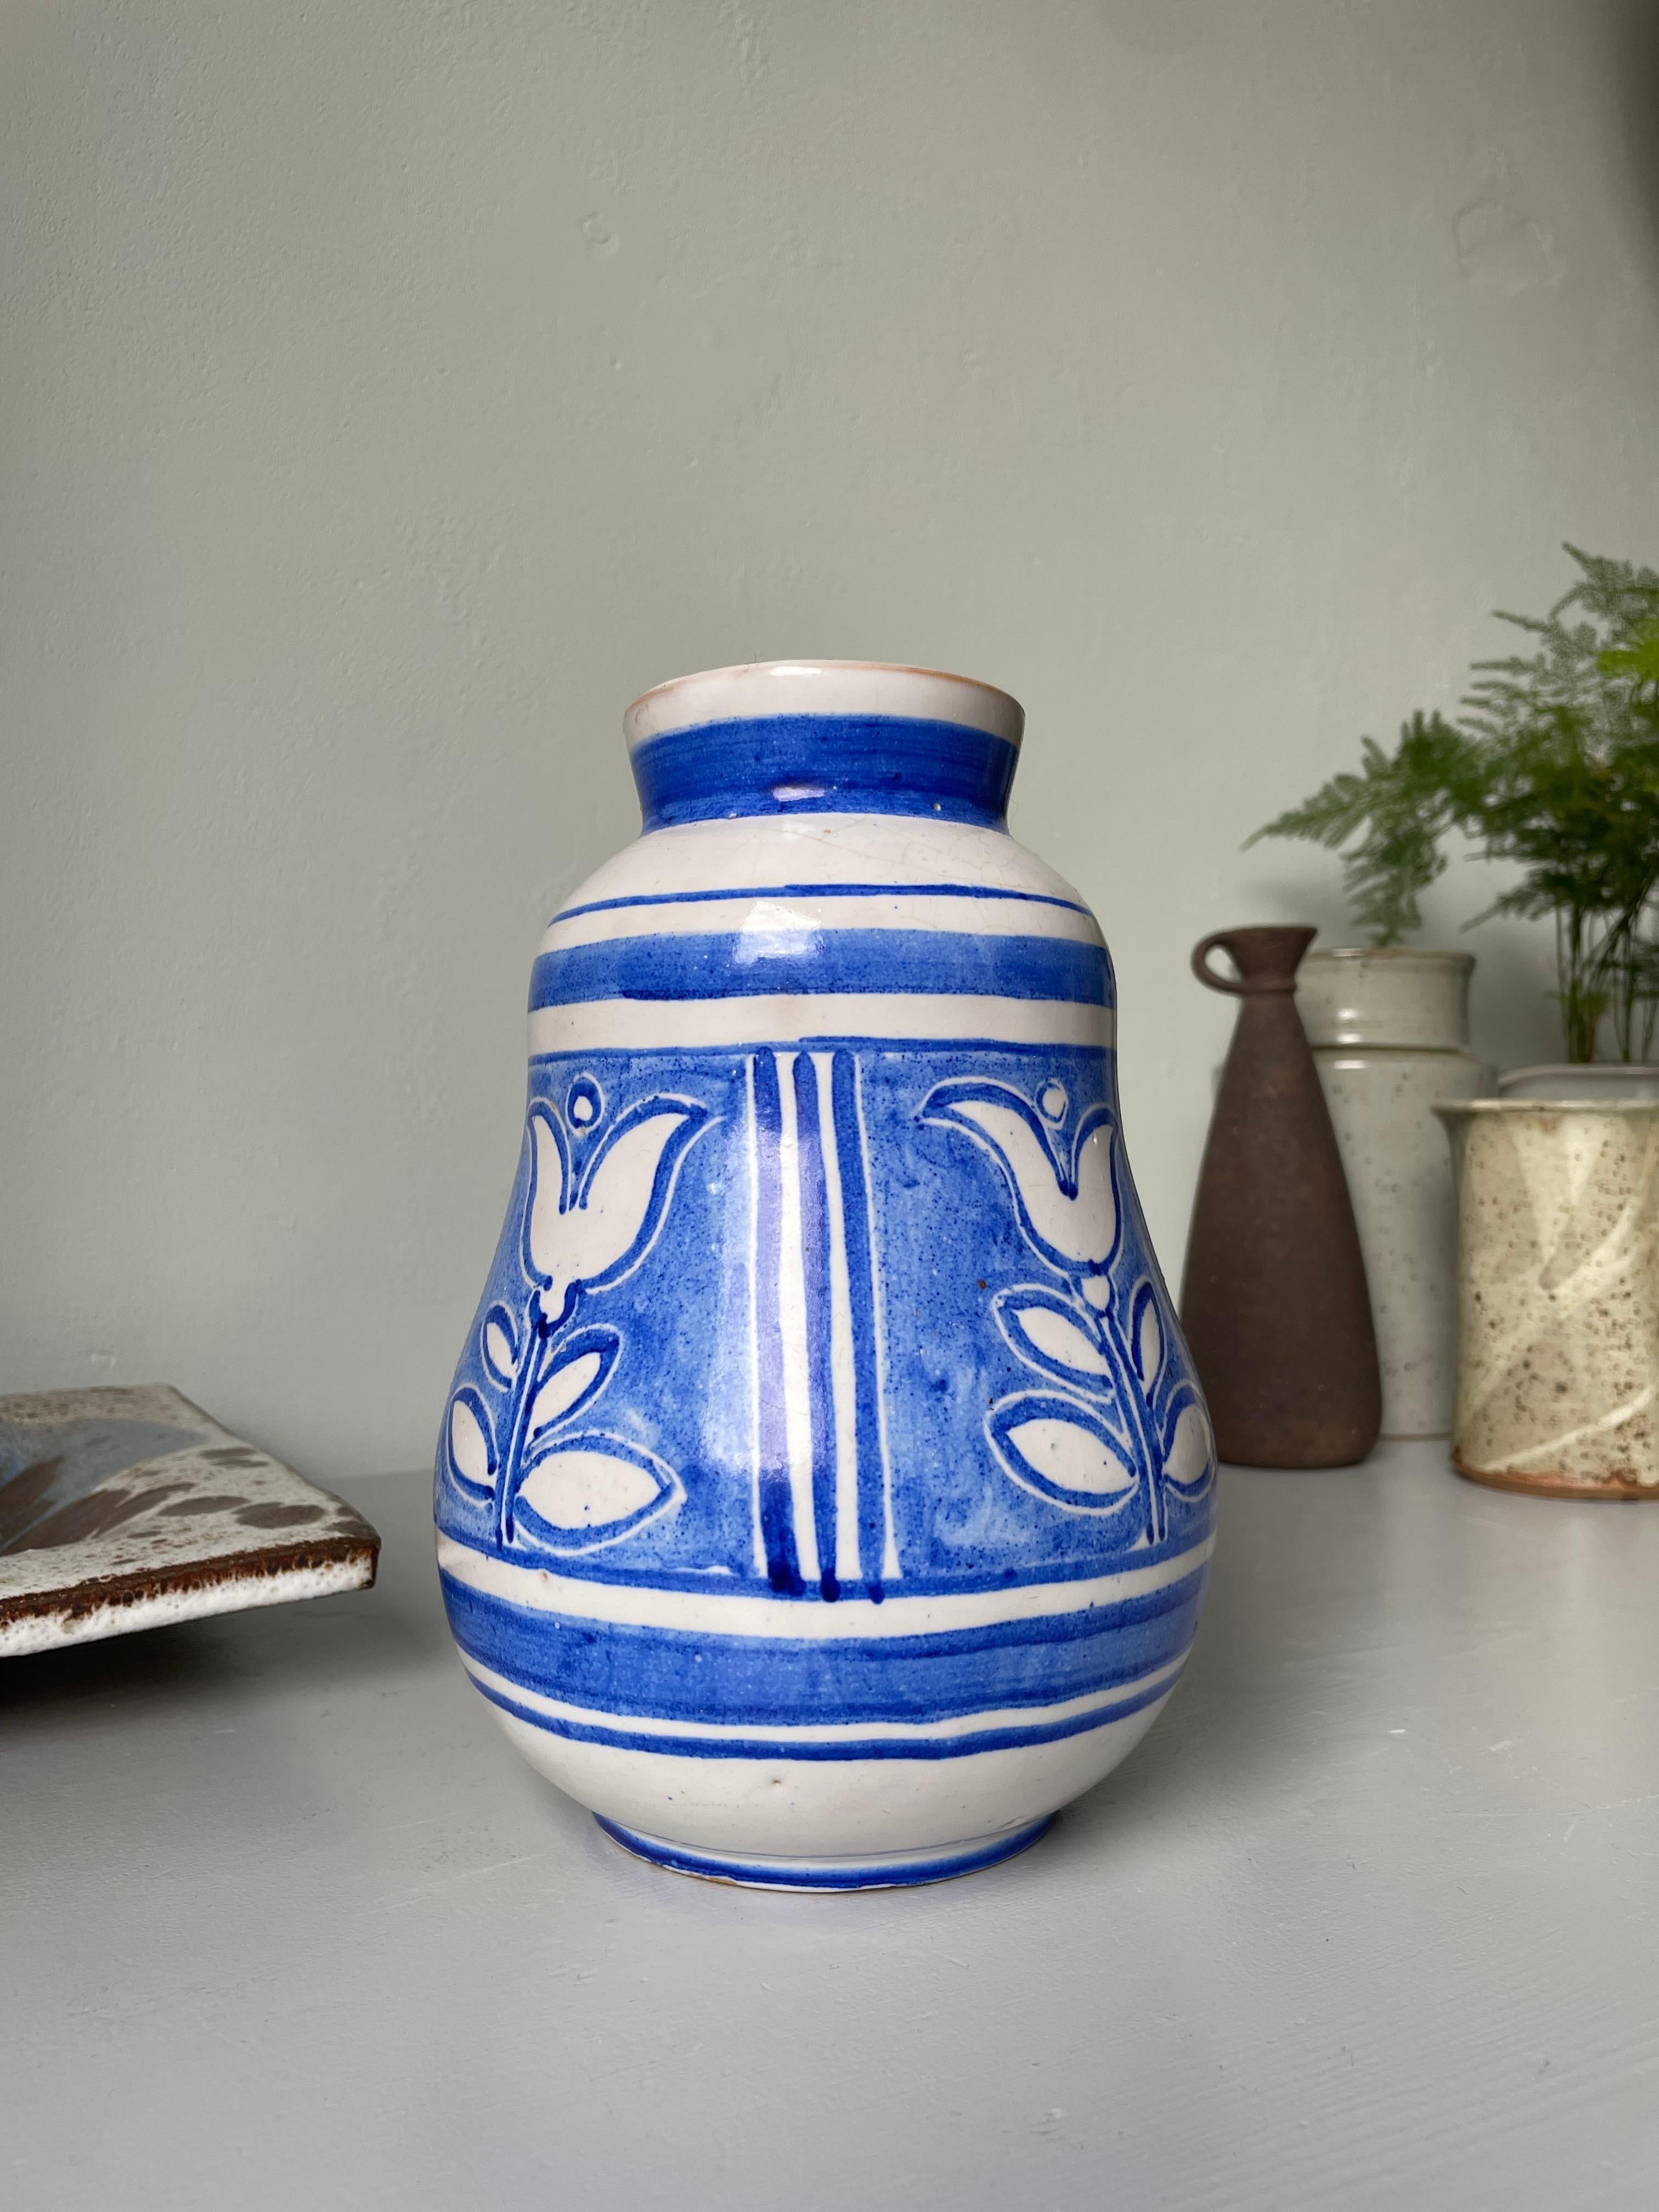 Midcentury skandinavischen modernen handgefertigten Keramik Studio weich geformte Vase. Weißer Sockel mit handgemaltem, gefüttertem Dekor mit großen weißen, blau umrandeten Blumen. Unter dem Sockel signiert. Schöner Vintage-Zustand. 
Skandinavien,